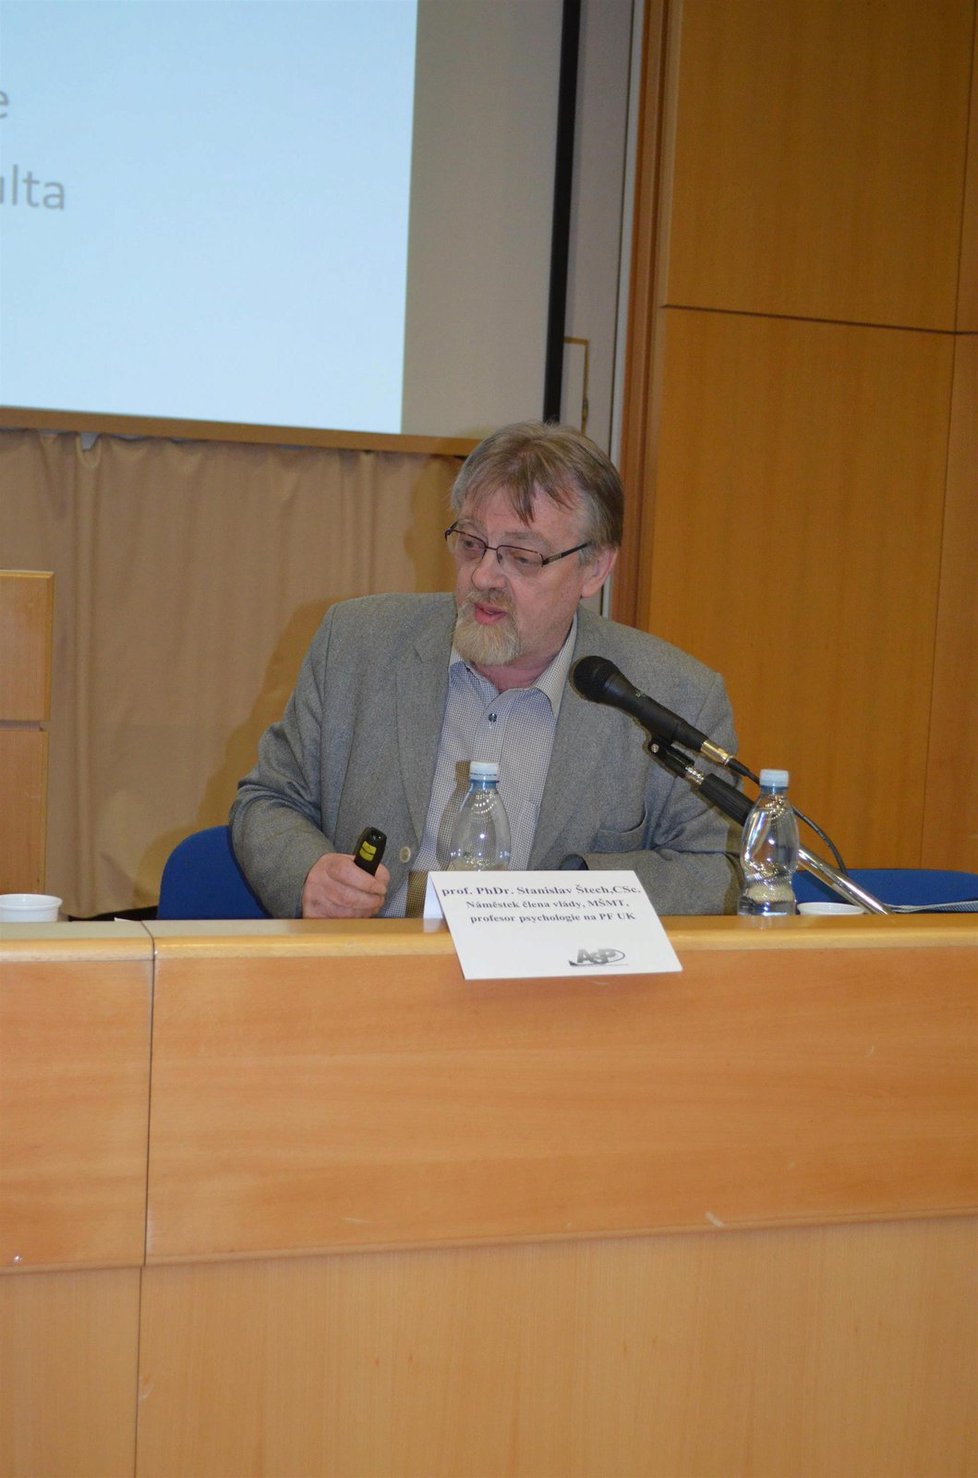 Náměstek ministryně školství Stanislav Štech přijel na víkendovou konferenci Asociace speciálních pedagogů (ASP).